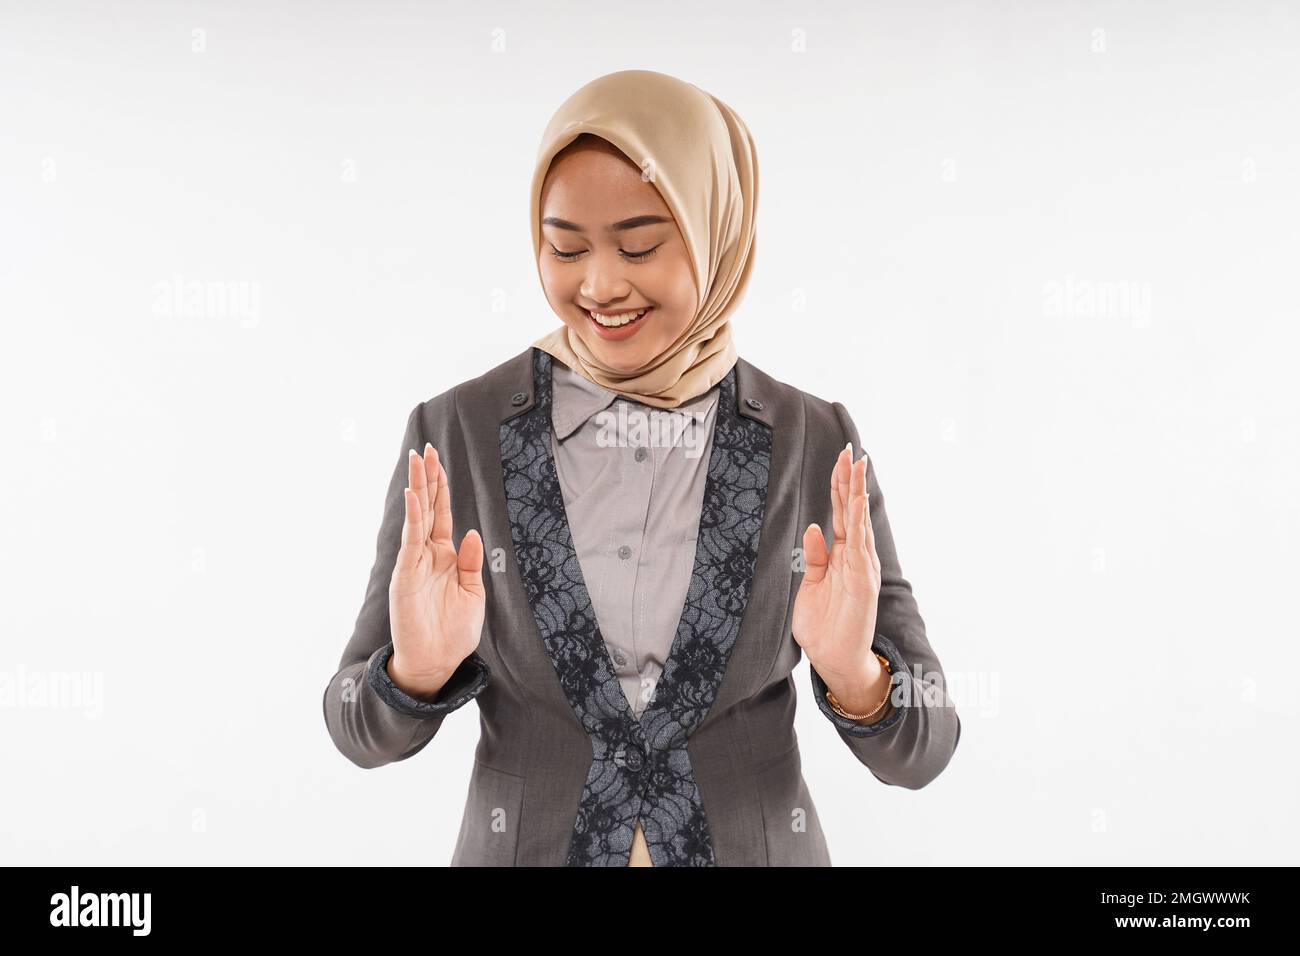 une femme avec hijab a ouvert ses mains avec l'espace vide entre Banque D'Images